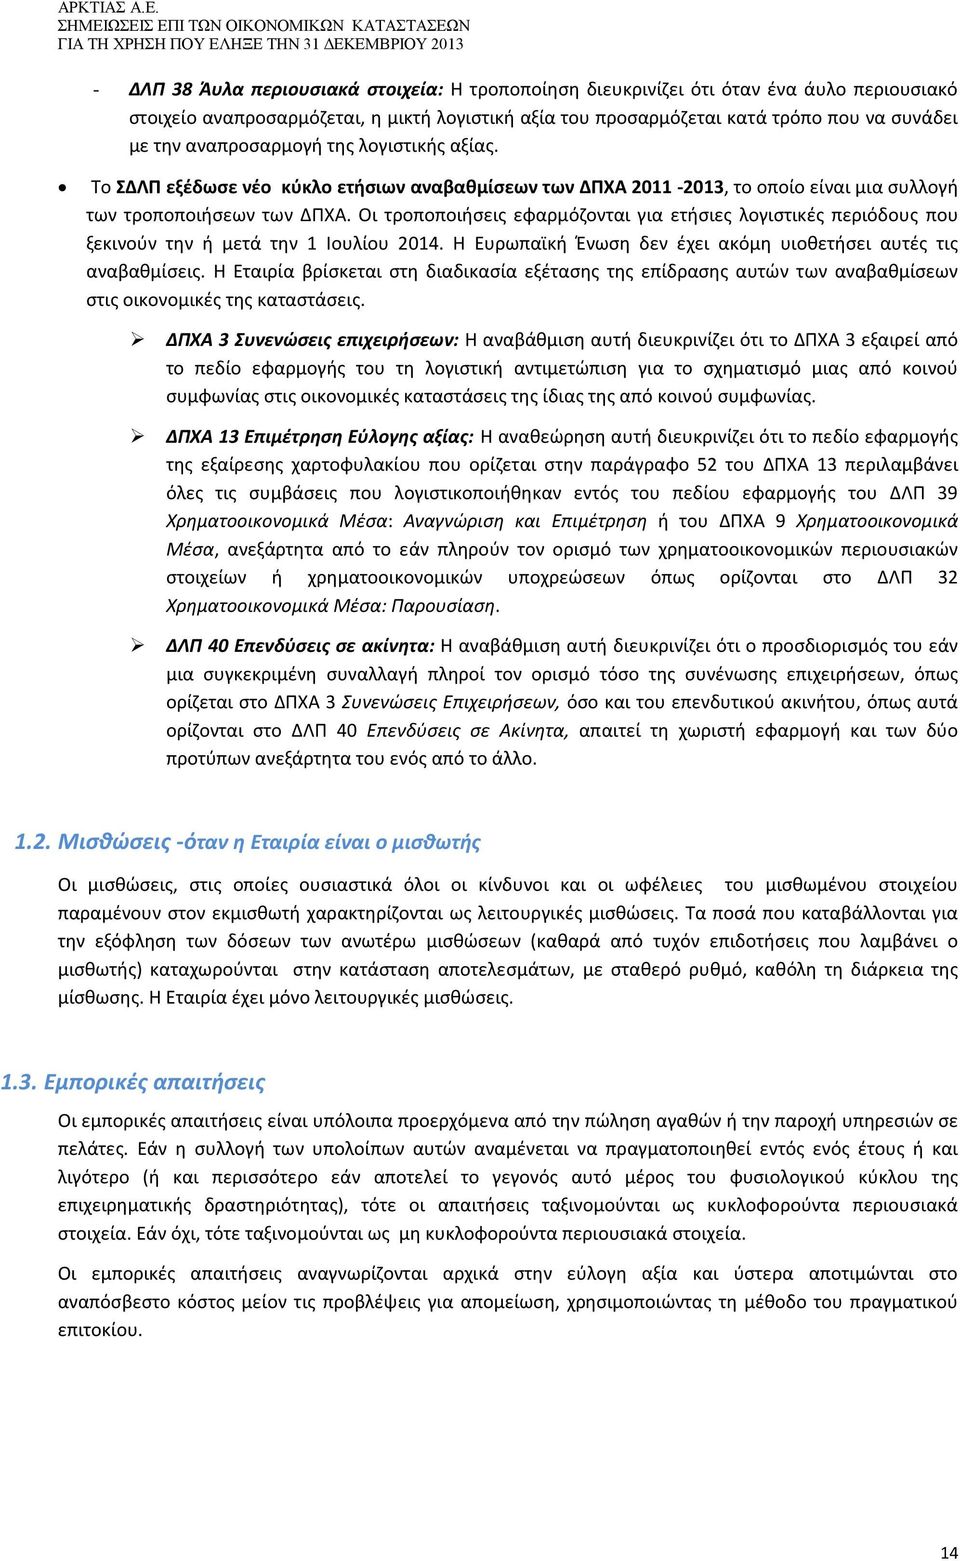 Το ΣΔΛΠ εξέδωσε νέο κύκλο ετήσιων αναβαθμίσεων των ΔΠΧΑ 2011-2013, το οποίο είναι μια συλλογή των τροποποιήσεων των ΔΠΧΑ.